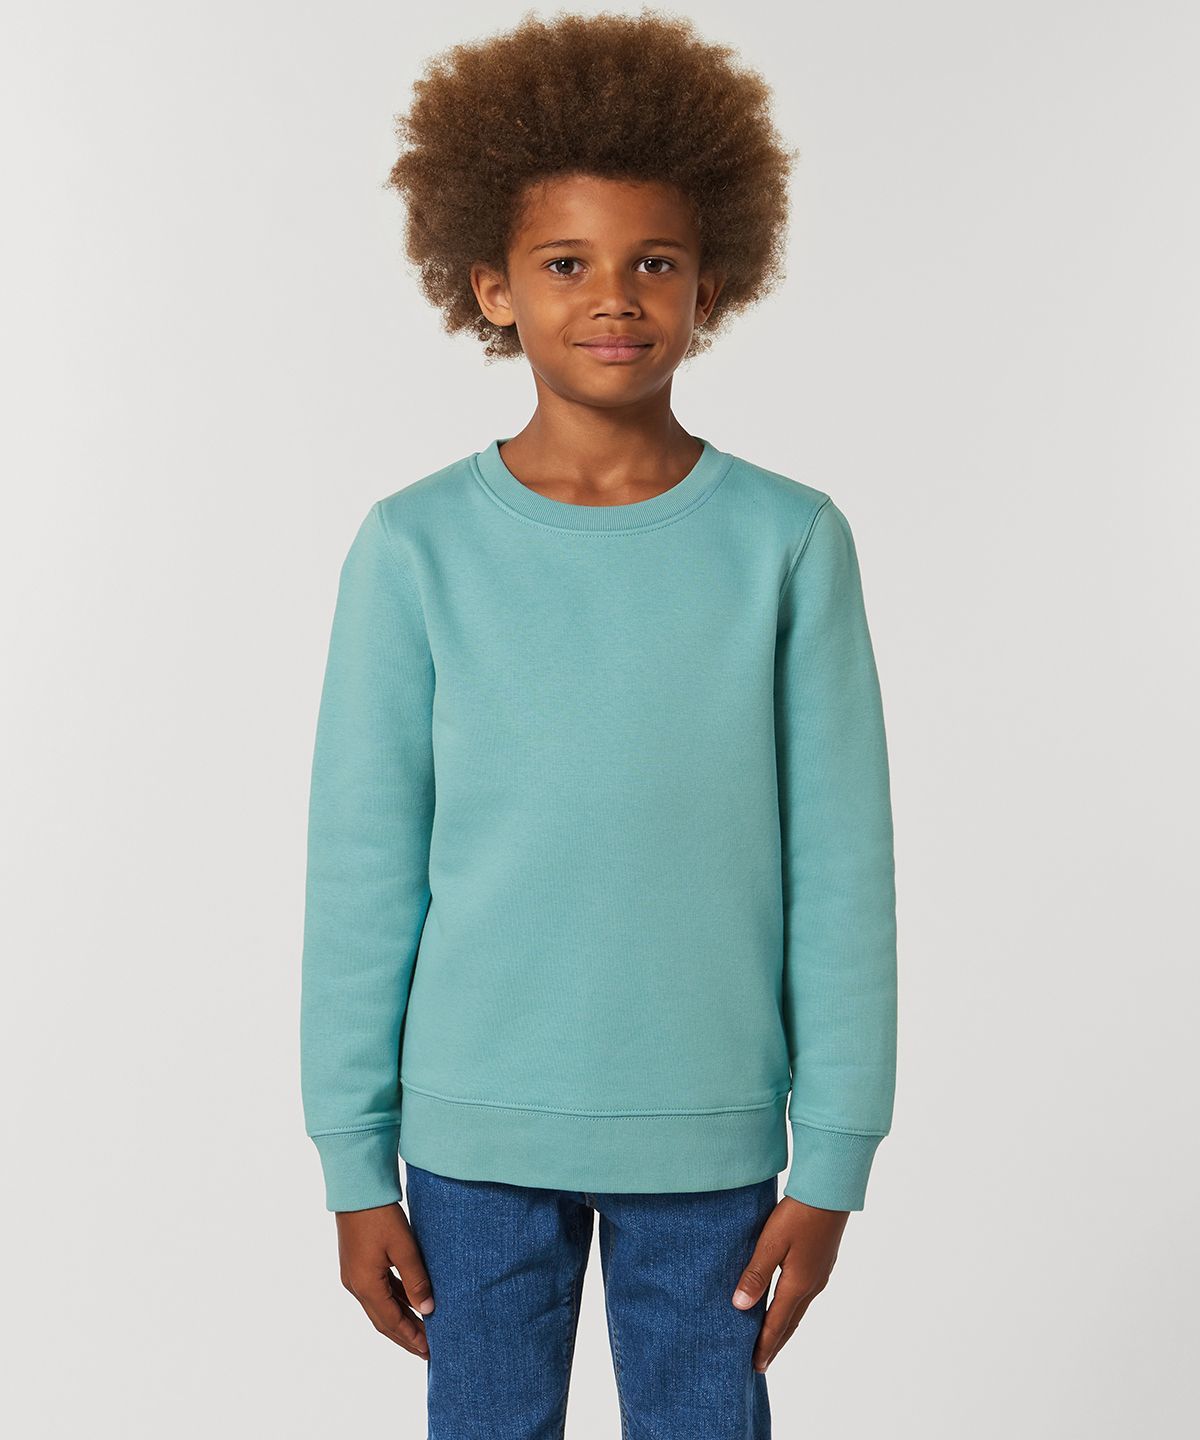 Kids Mini Changer Iconic Crew Neck Sweatshirt (STSK913)